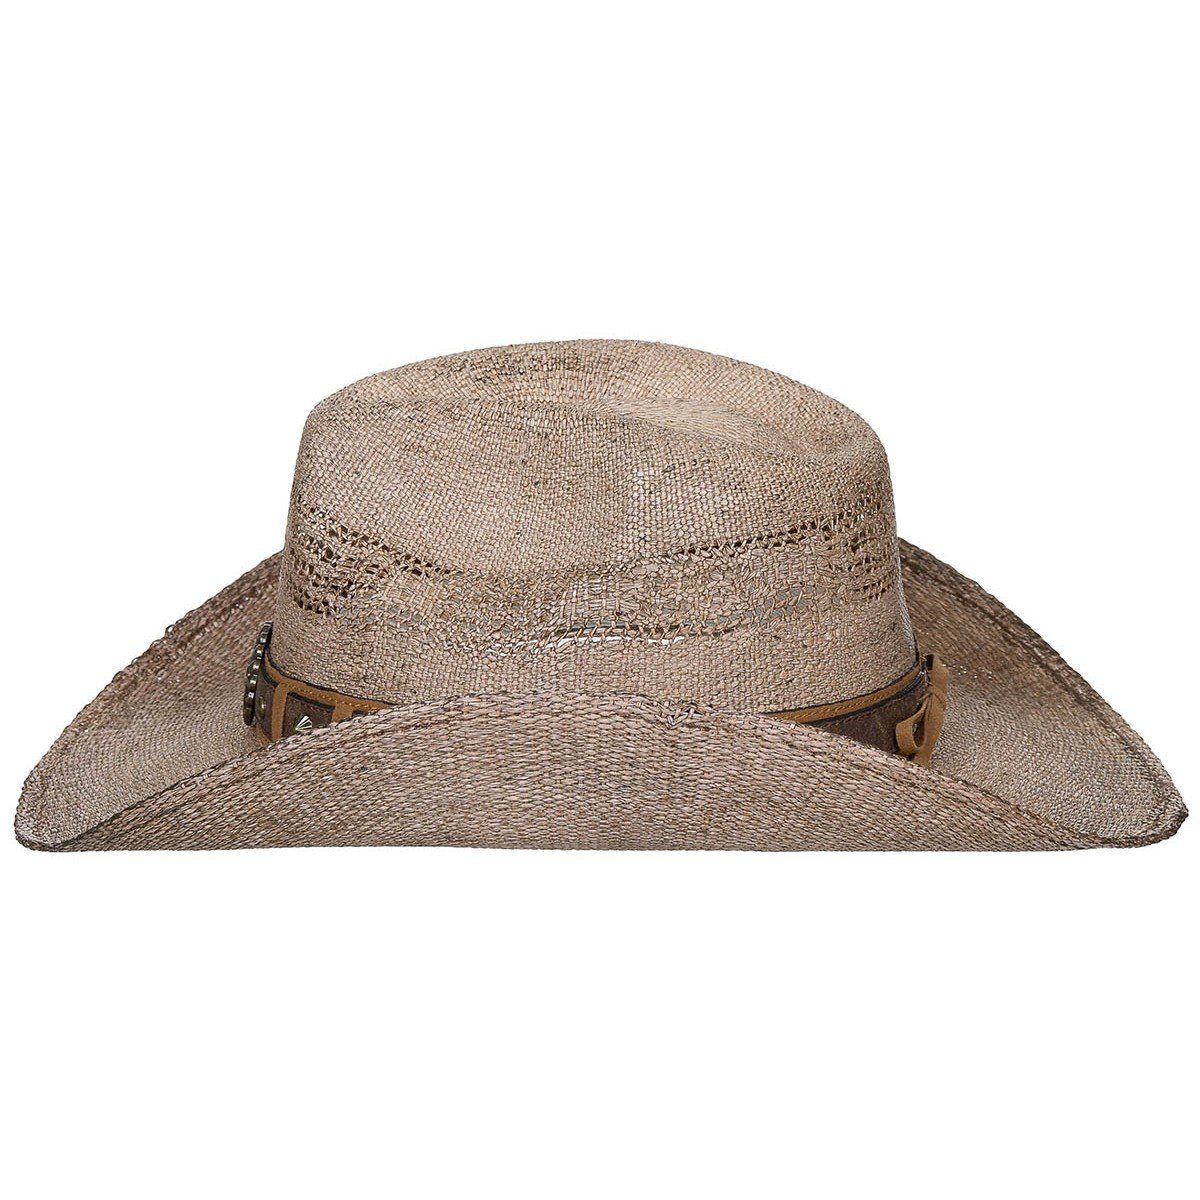 "Colorado", Style FoxOutdoor braun Strohhut Western mit Hutband mit Strohhut, Hutband,